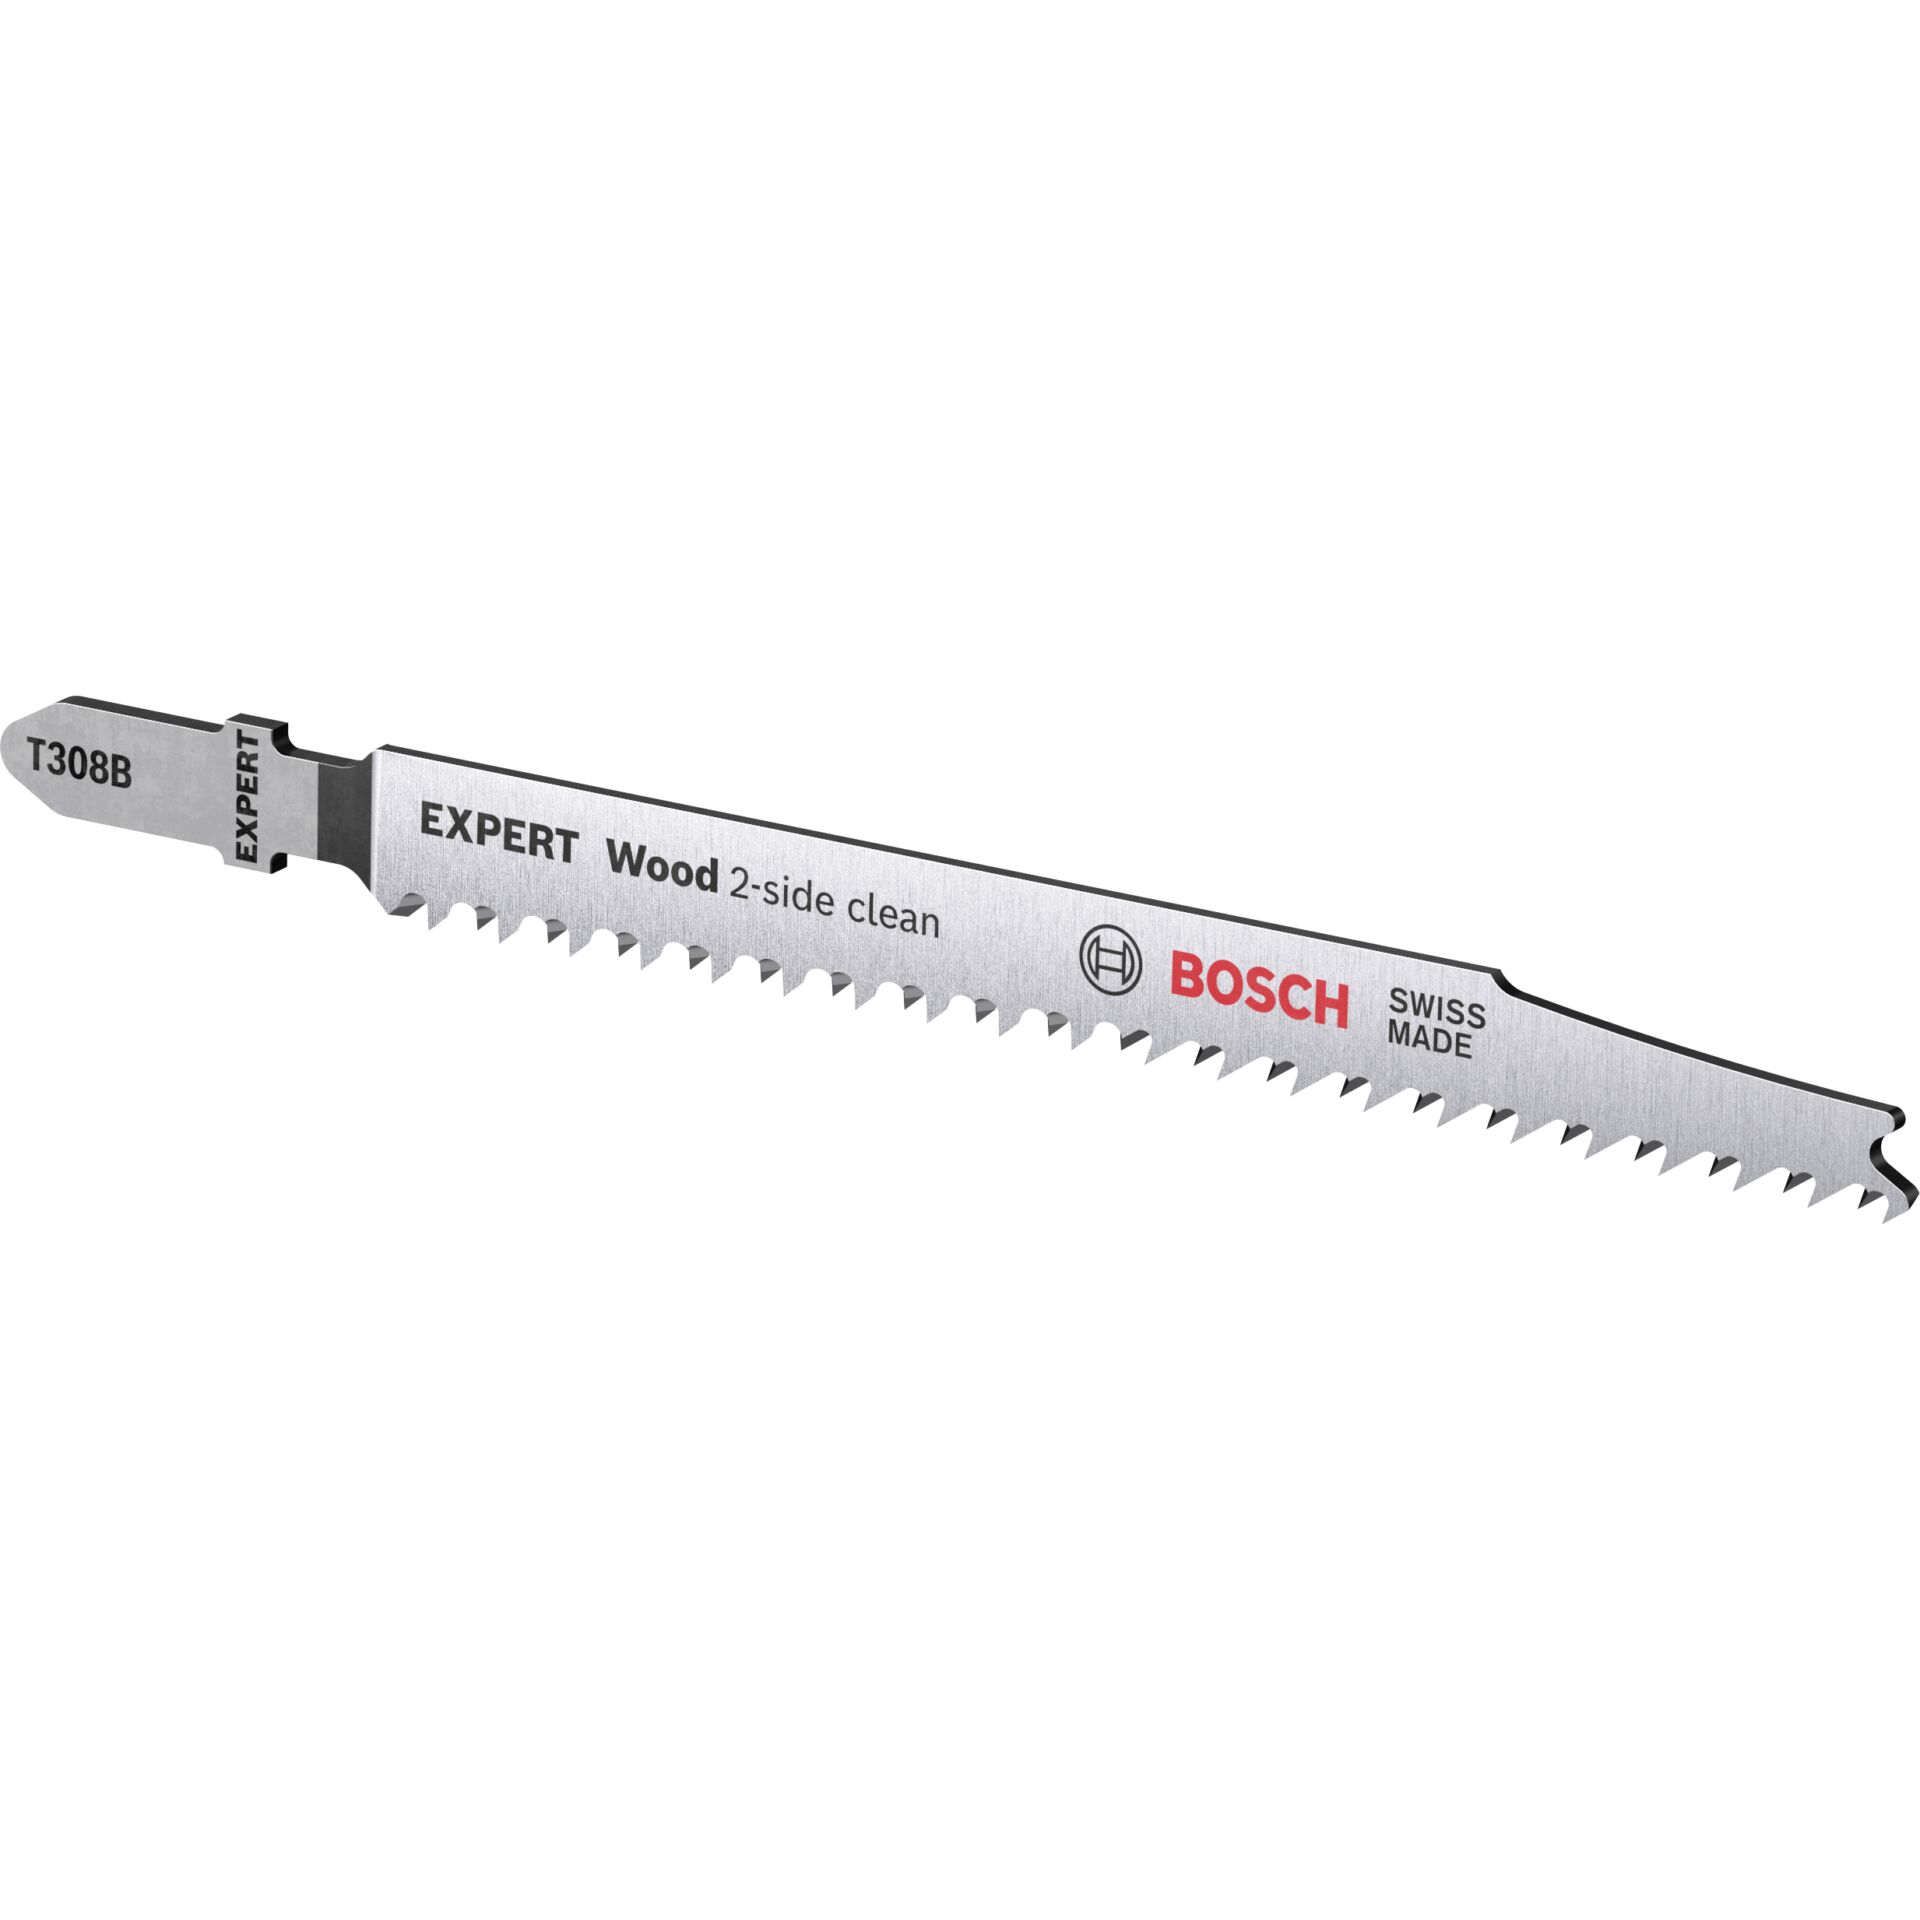 Bosch EXPERT jigsaw blades T308B 5pcs Wood 2-side clean